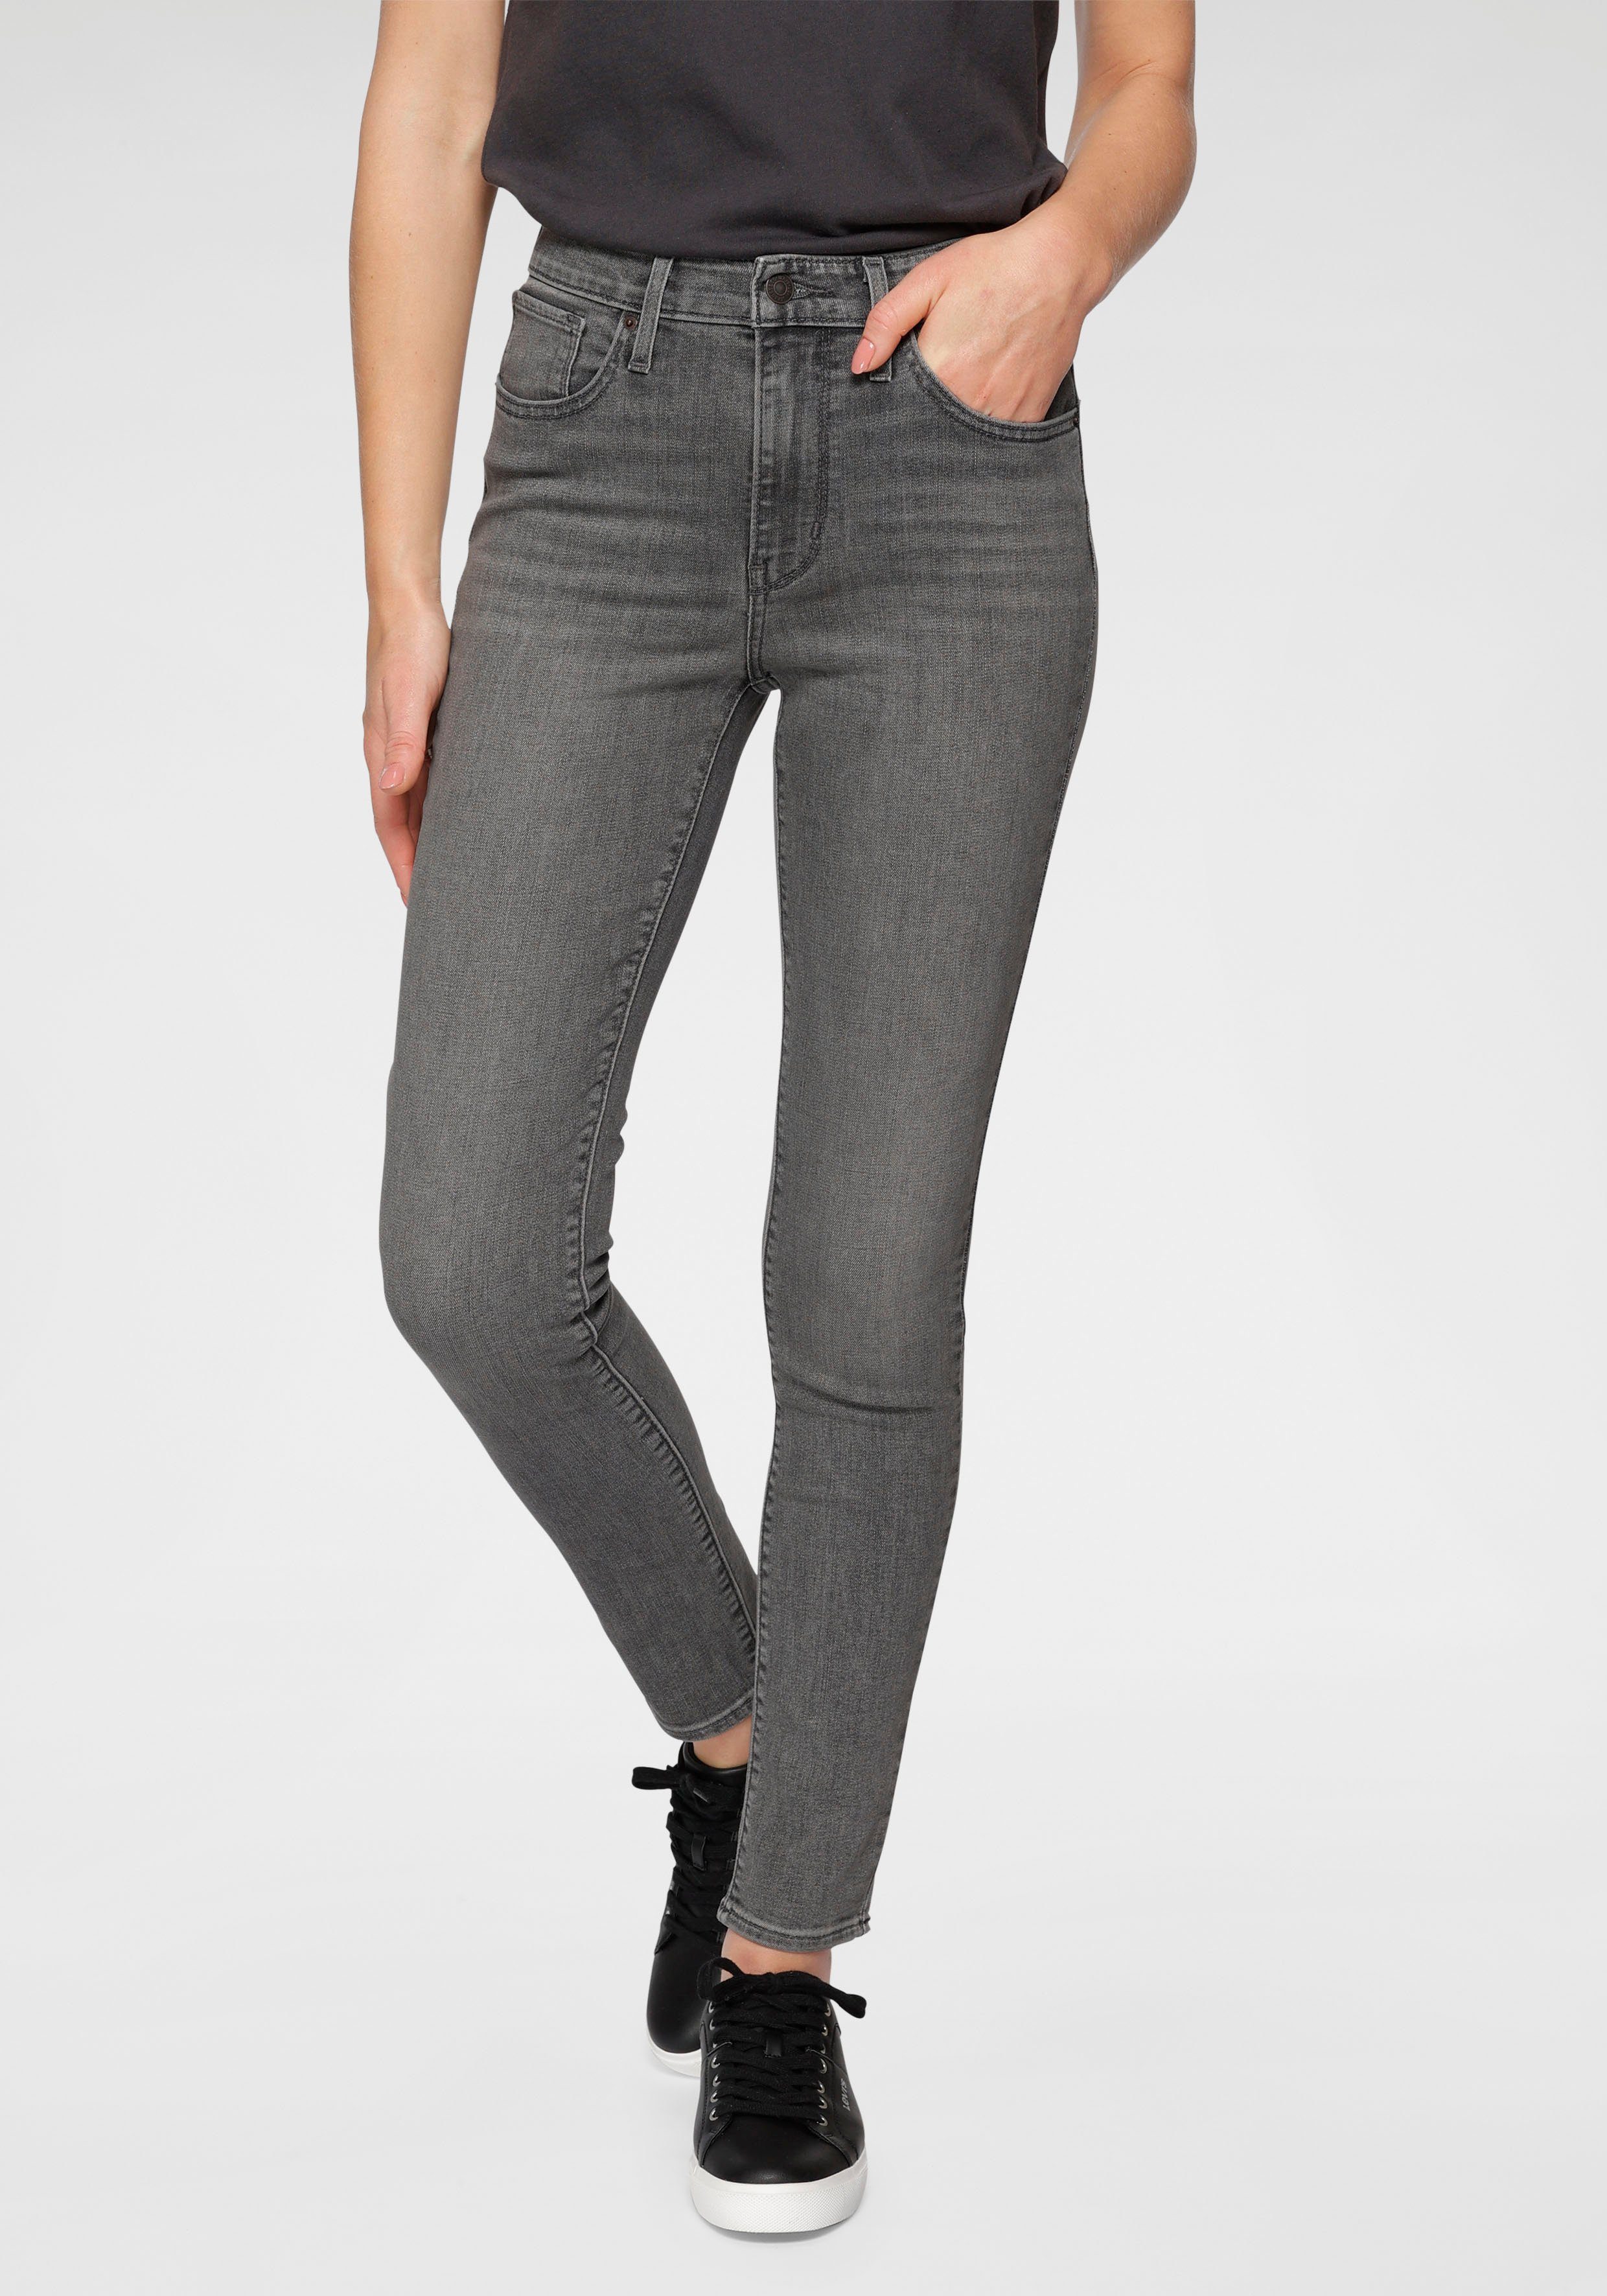 Graue High Waist Jeans online kaufen | OTTO